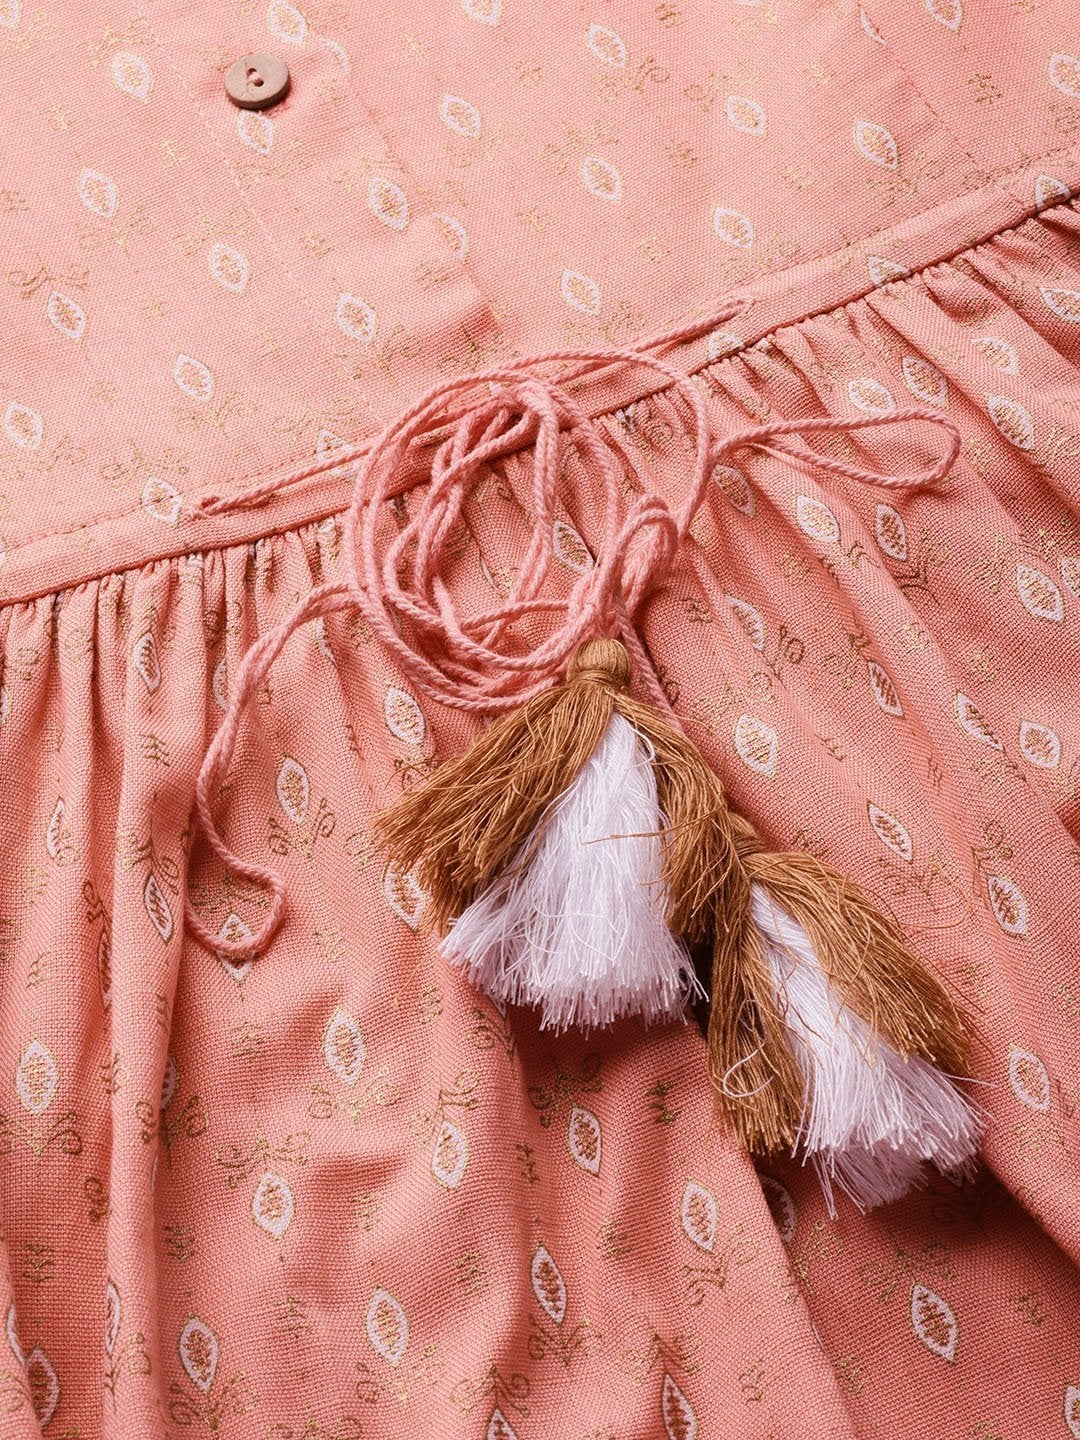 Women's Peach Foil Drawstring Dress - SASSAFRAS